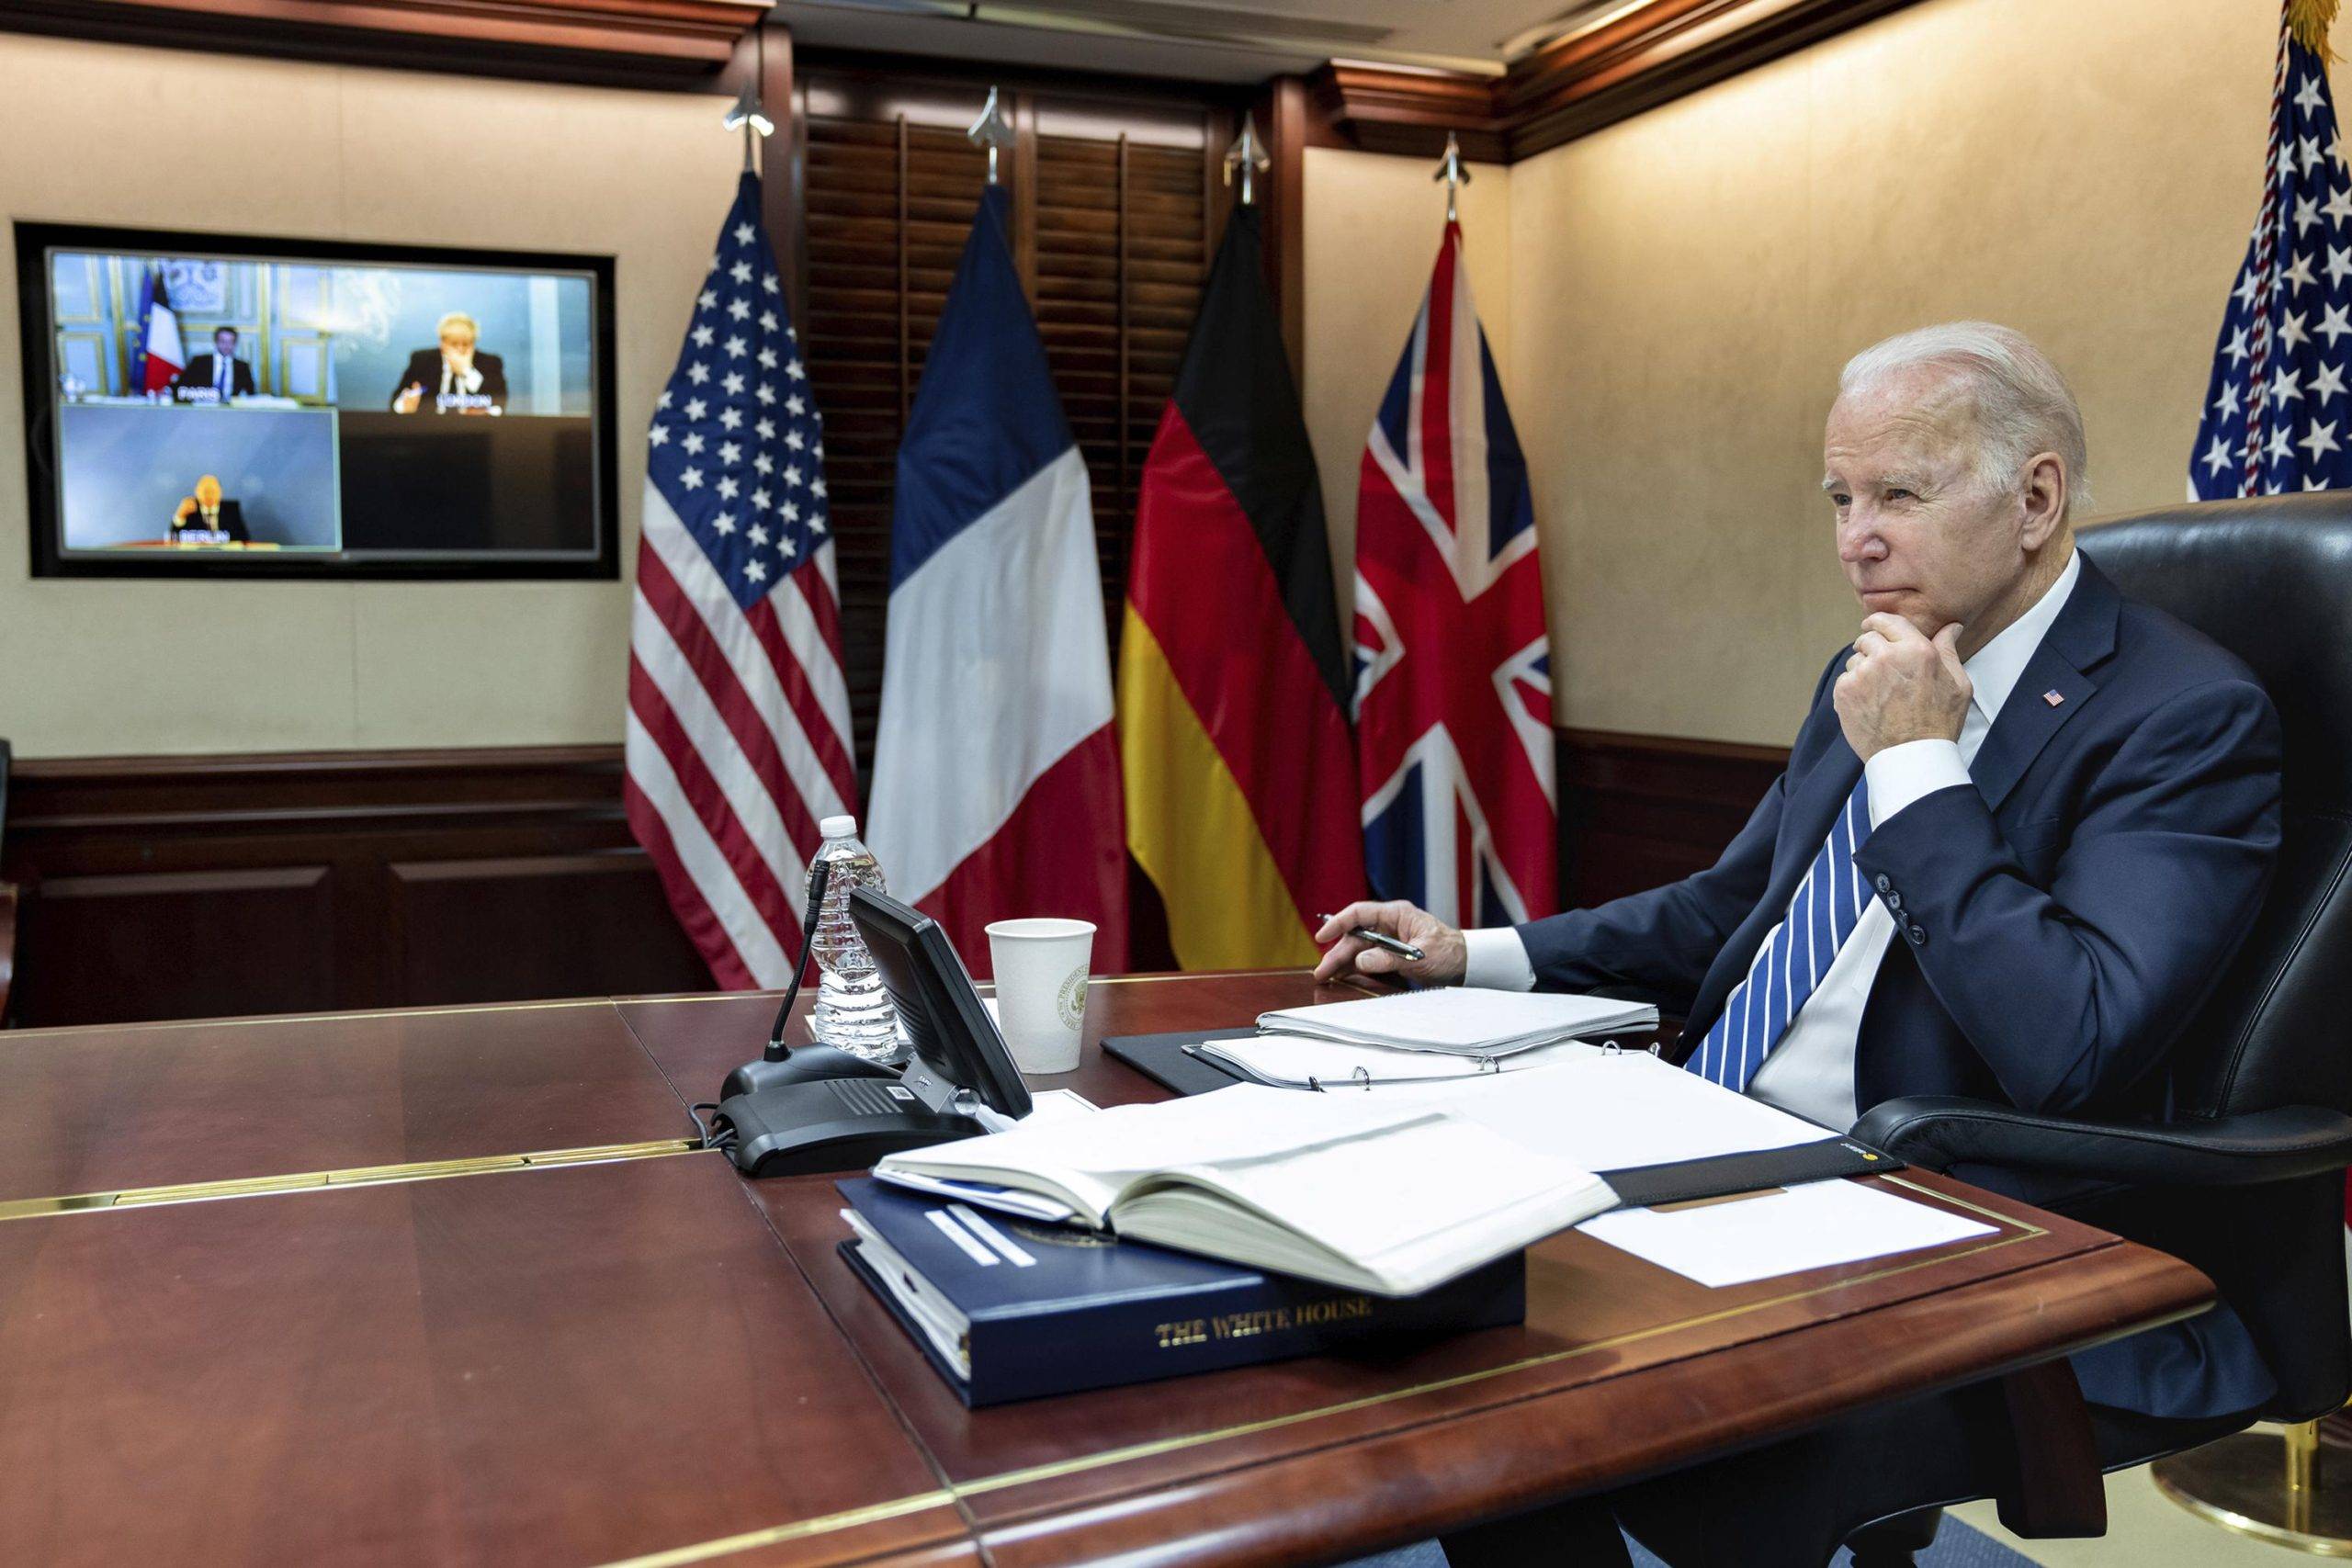  Reunión de Fernández y Biden en Washington se posterga